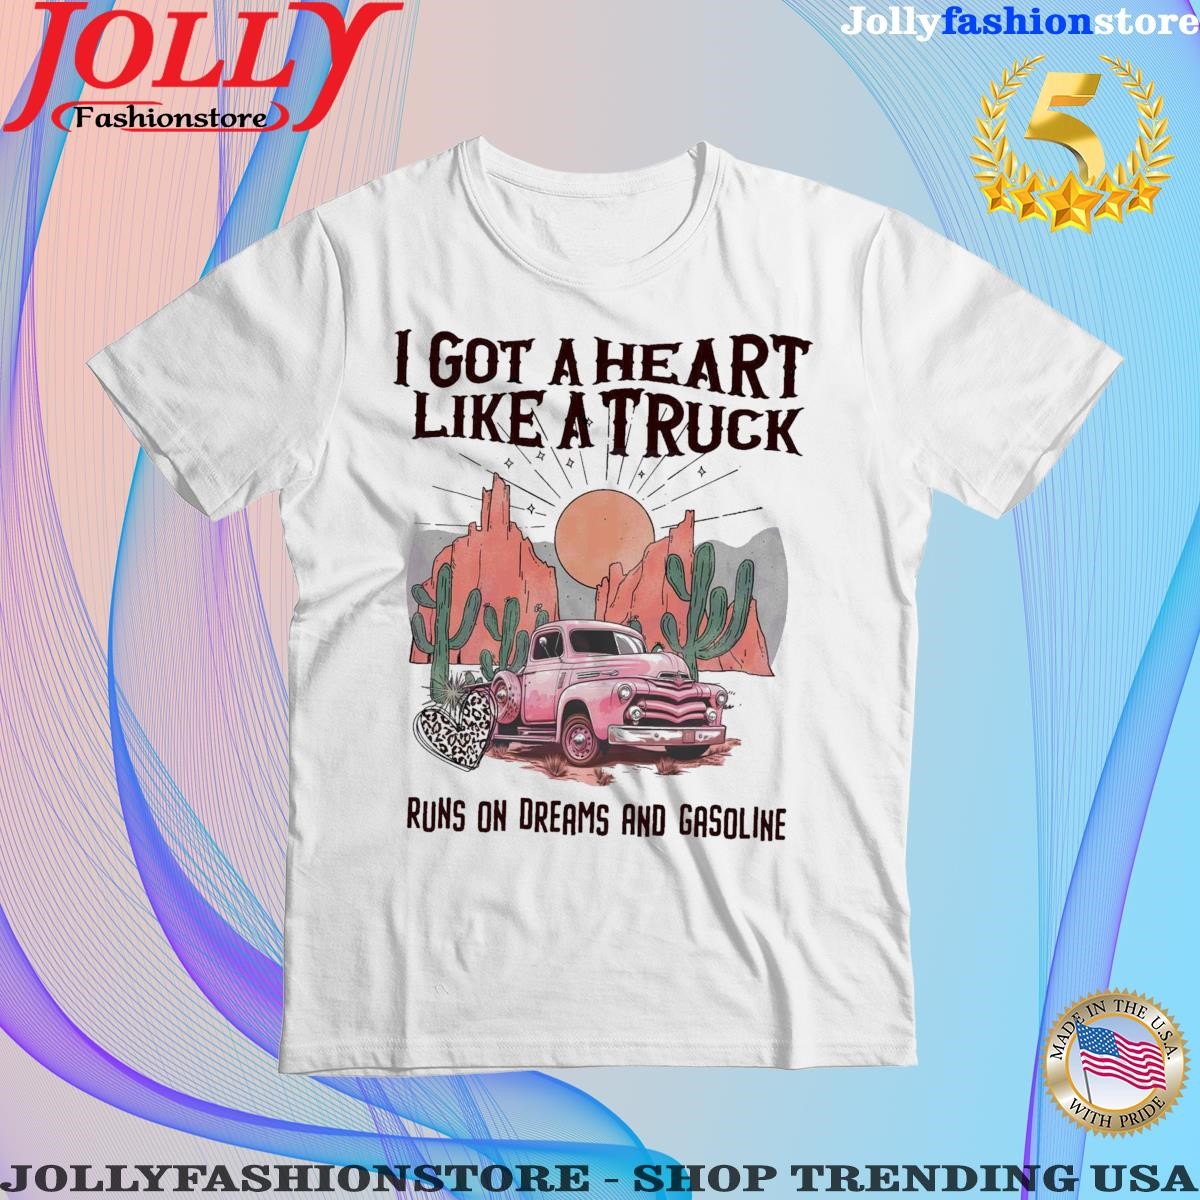 Got a heart like a truck country boho western desert sunset shirt